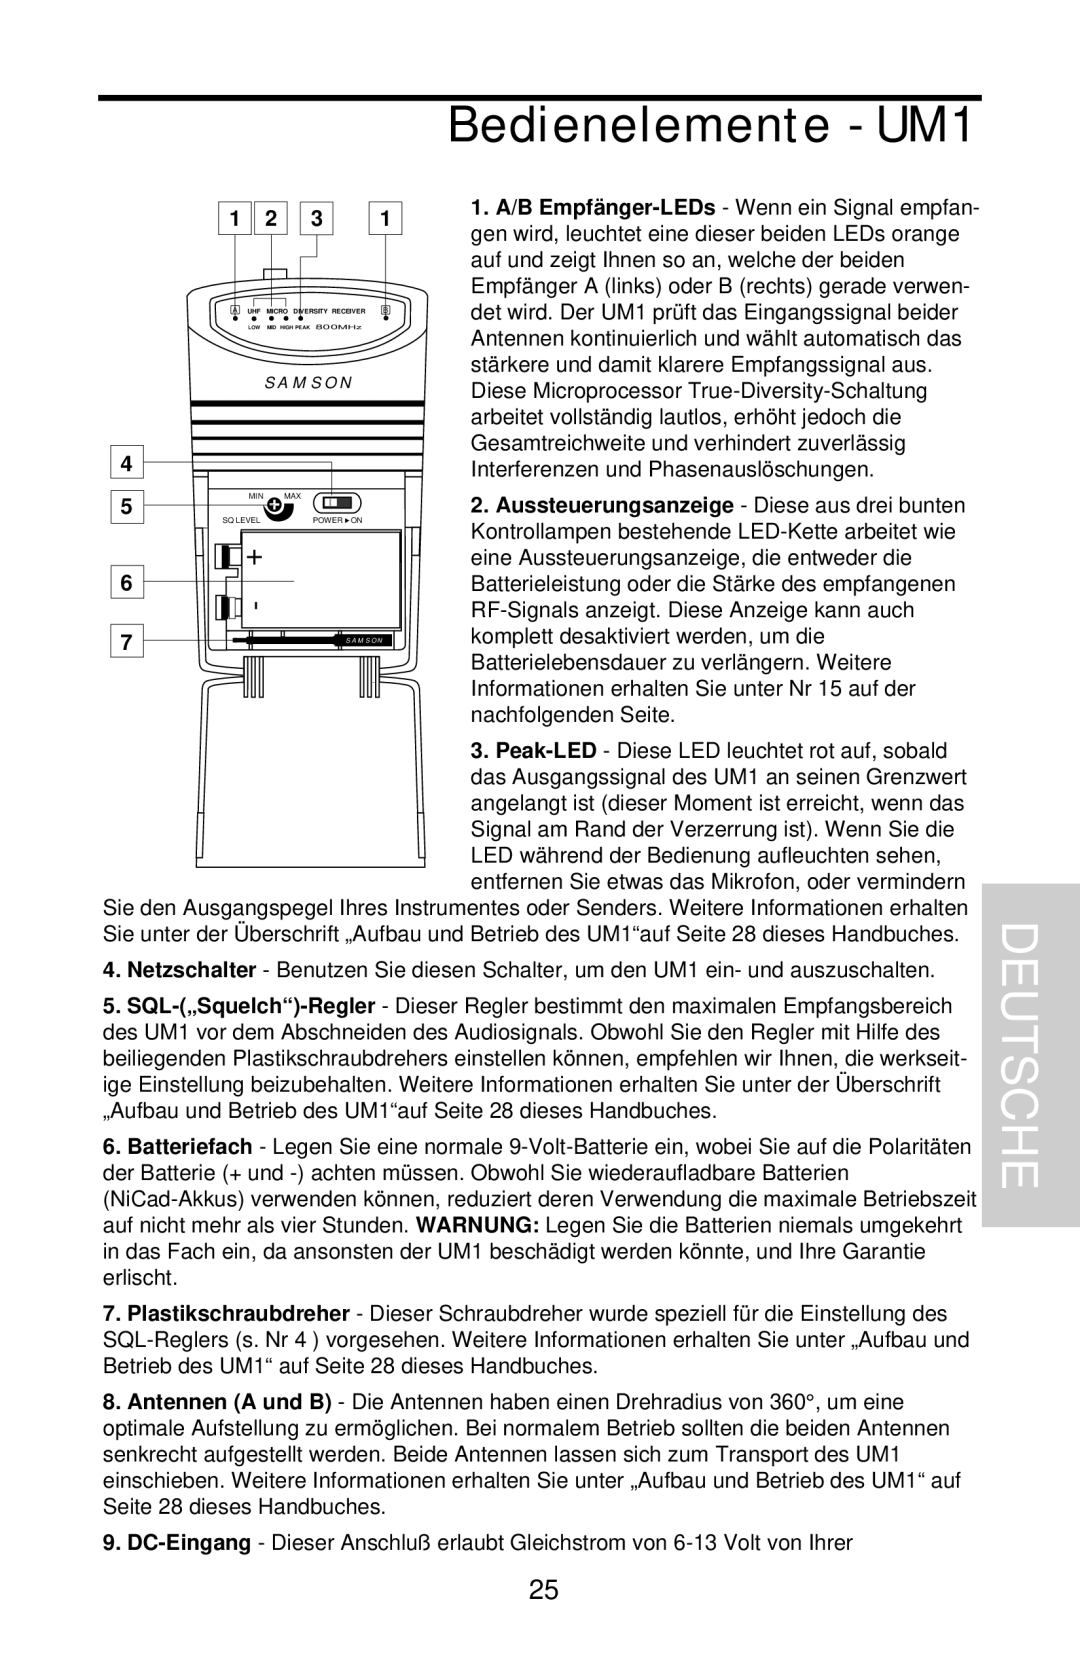 Samson UHF Series One owner manual Bedienelemente - UM1, Deutsche 